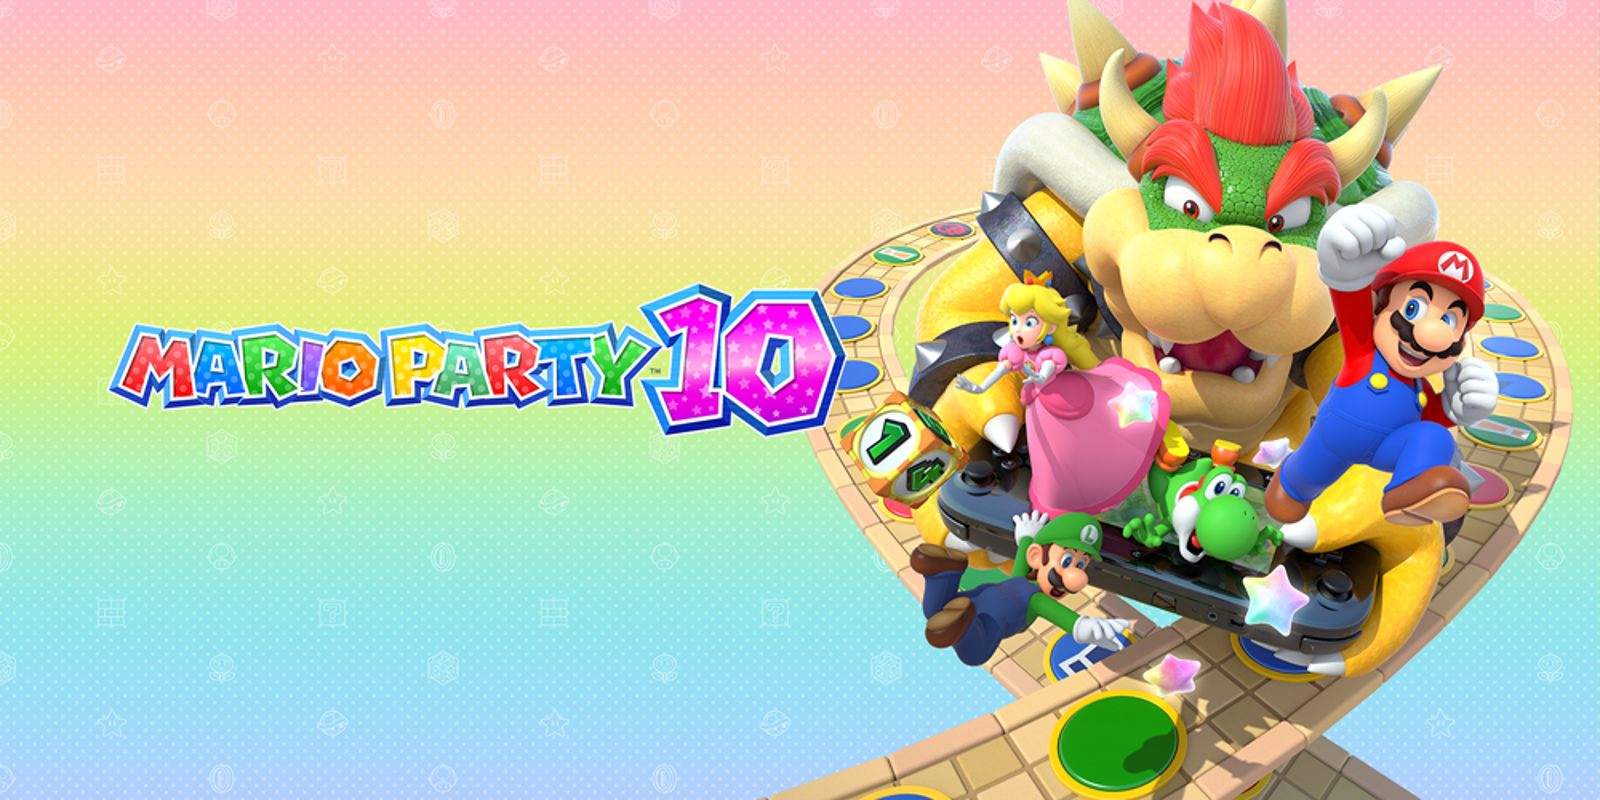 Unsere Top Favoriten - Suchen Sie bei uns die Nintendo wii mario party entsprechend Ihrer Wünsche